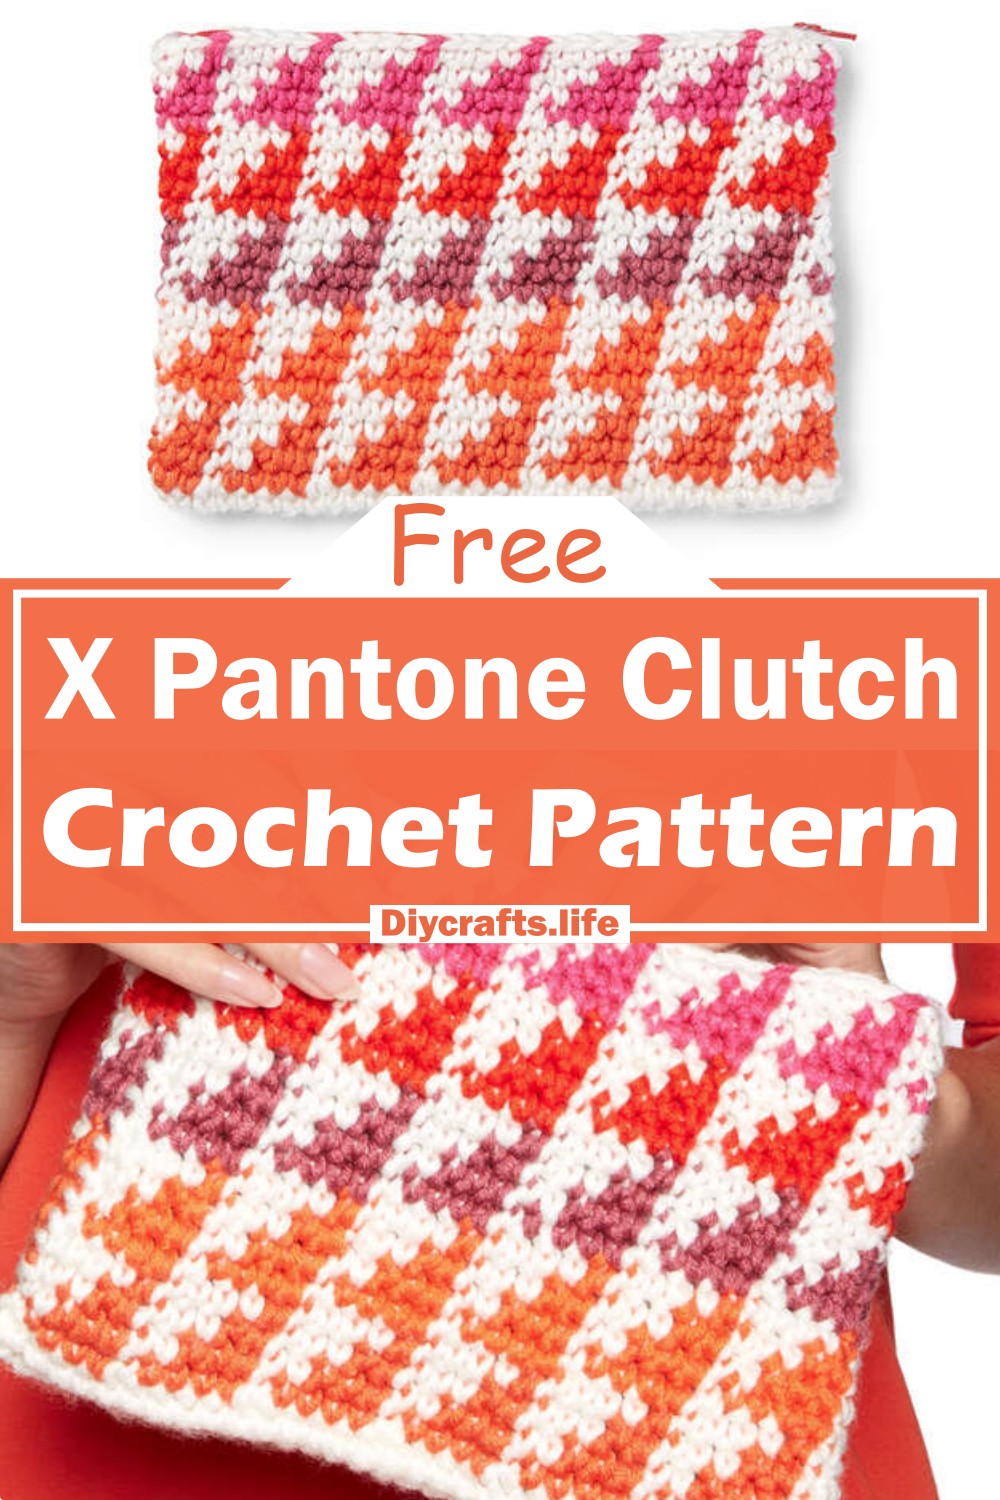 Crochet X Pantone Clutch Pattern